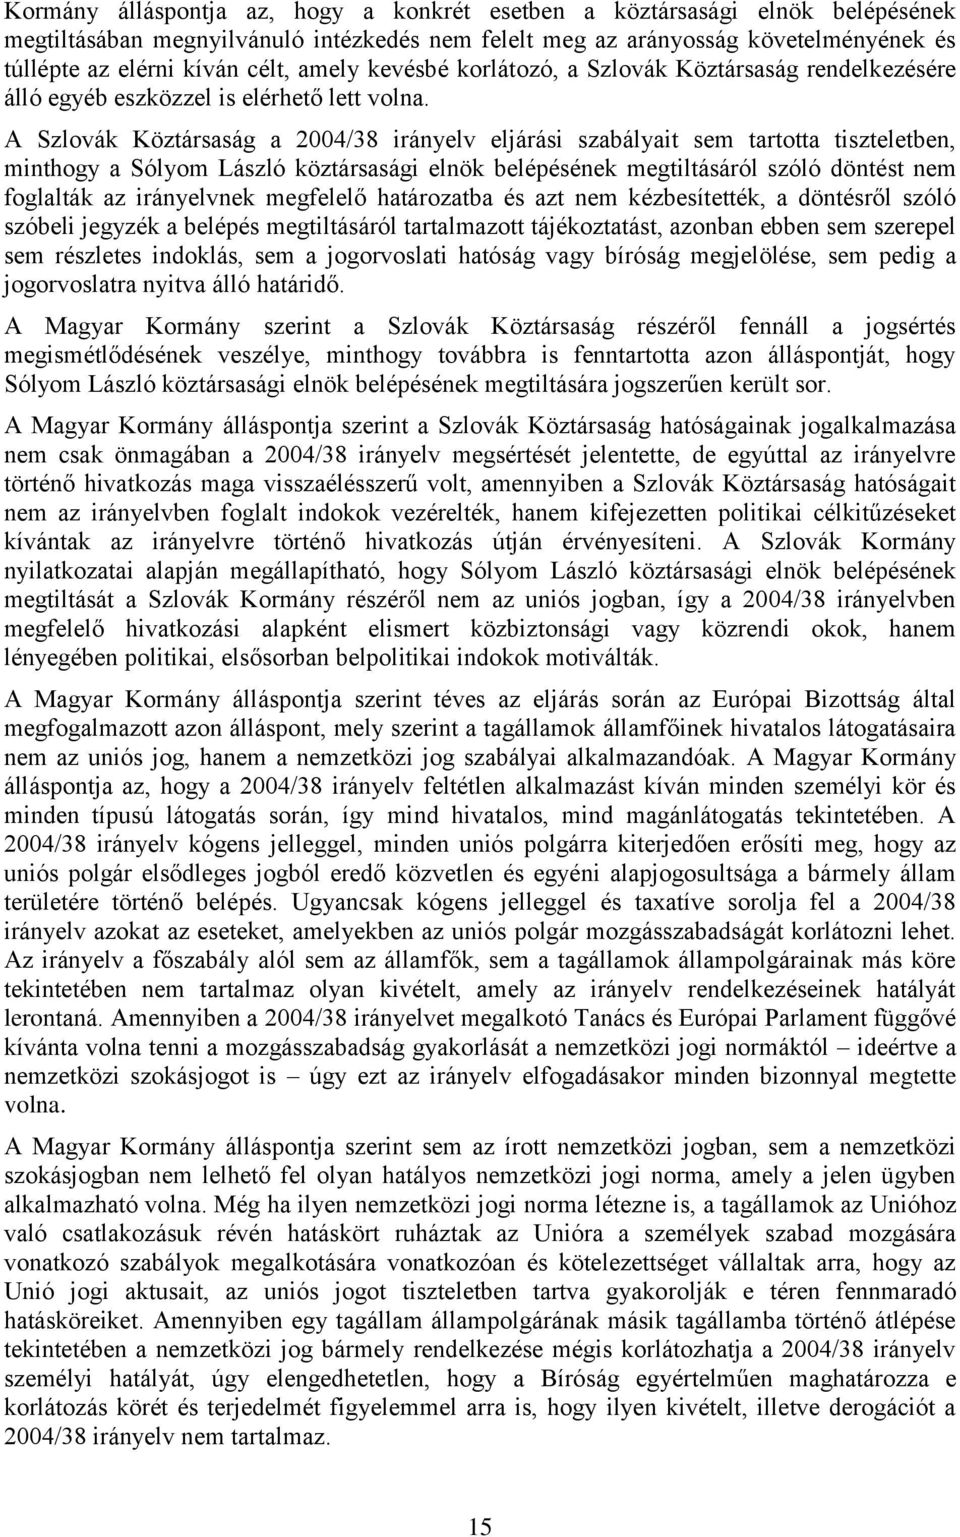 A Szlovák Köztársaság a 2004/38 irányelv eljárási szabályait sem tartotta tiszteletben, minthogy a Sólyom László köztársasági elnök belépésének megtiltásáról szóló döntést nem foglalták az